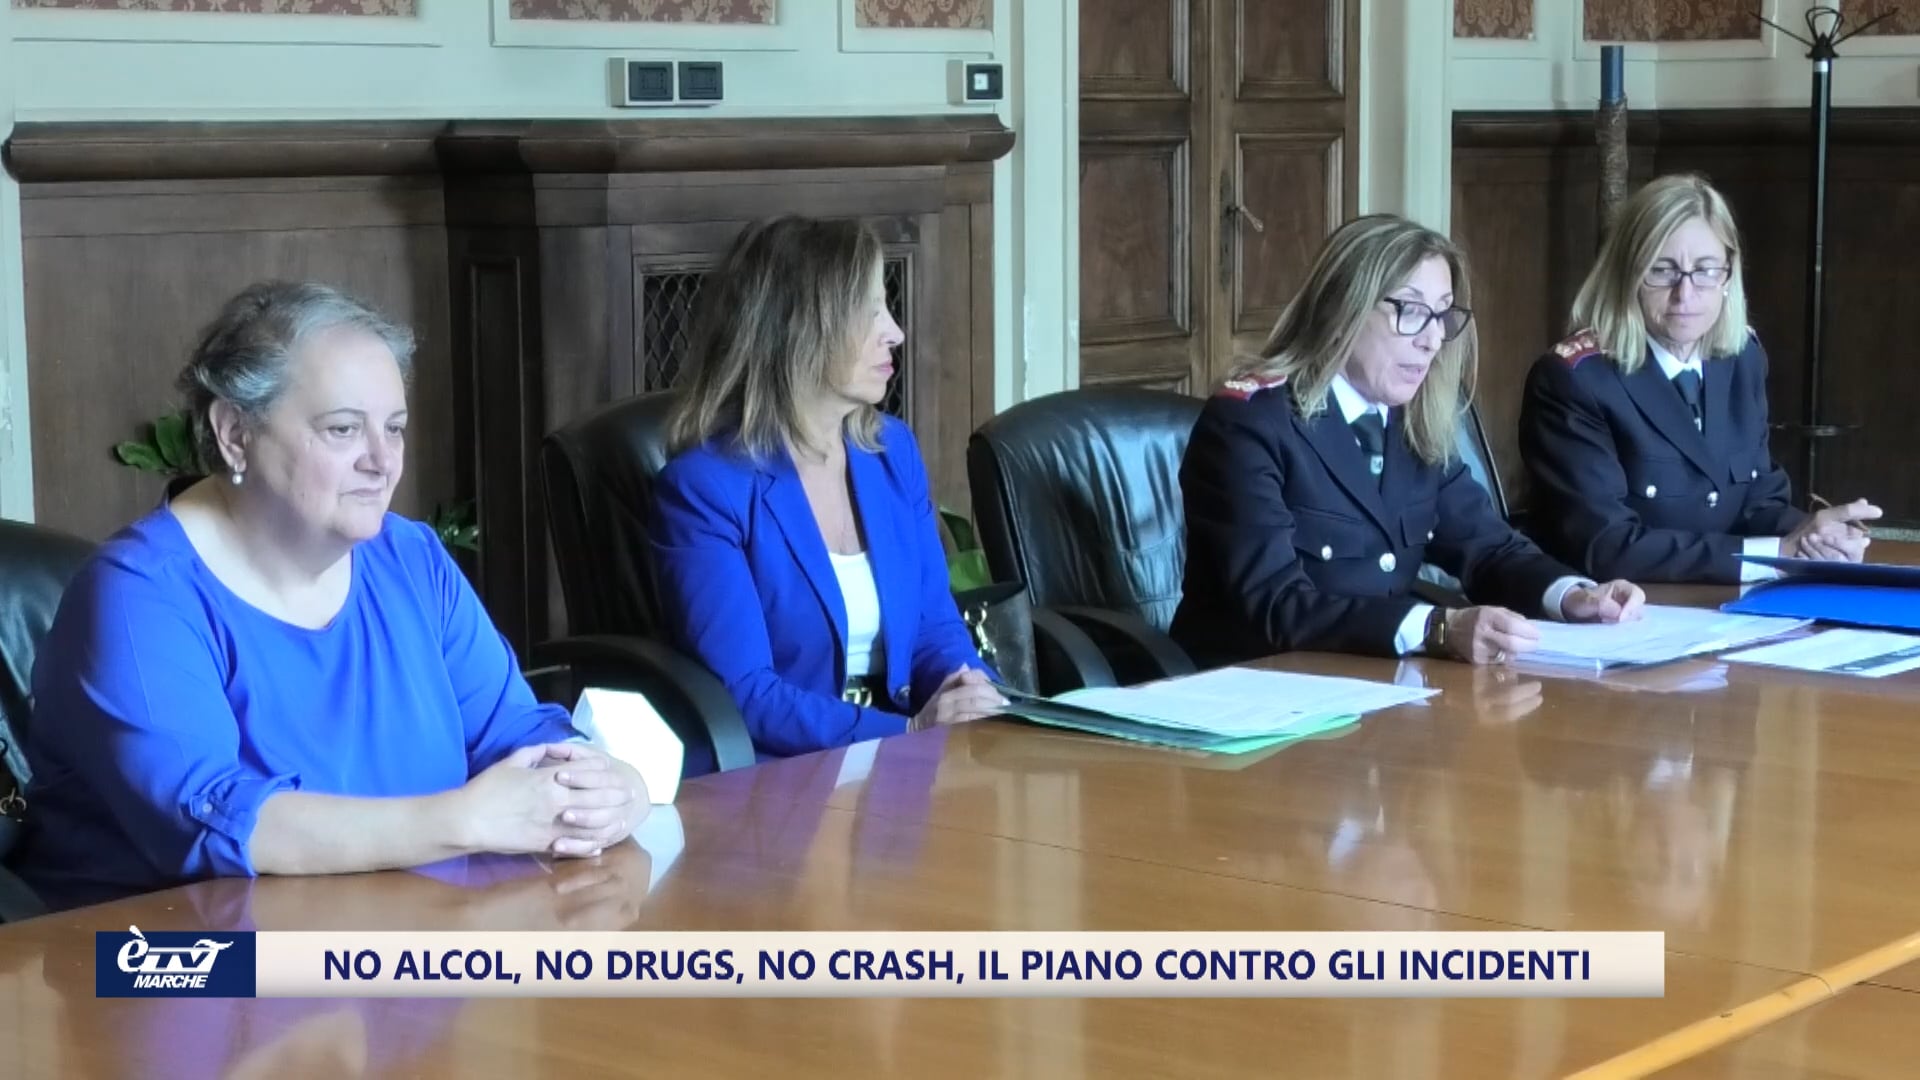 No alcol, no drugs, no crash: il piano contro gli incidenti - VIDEO